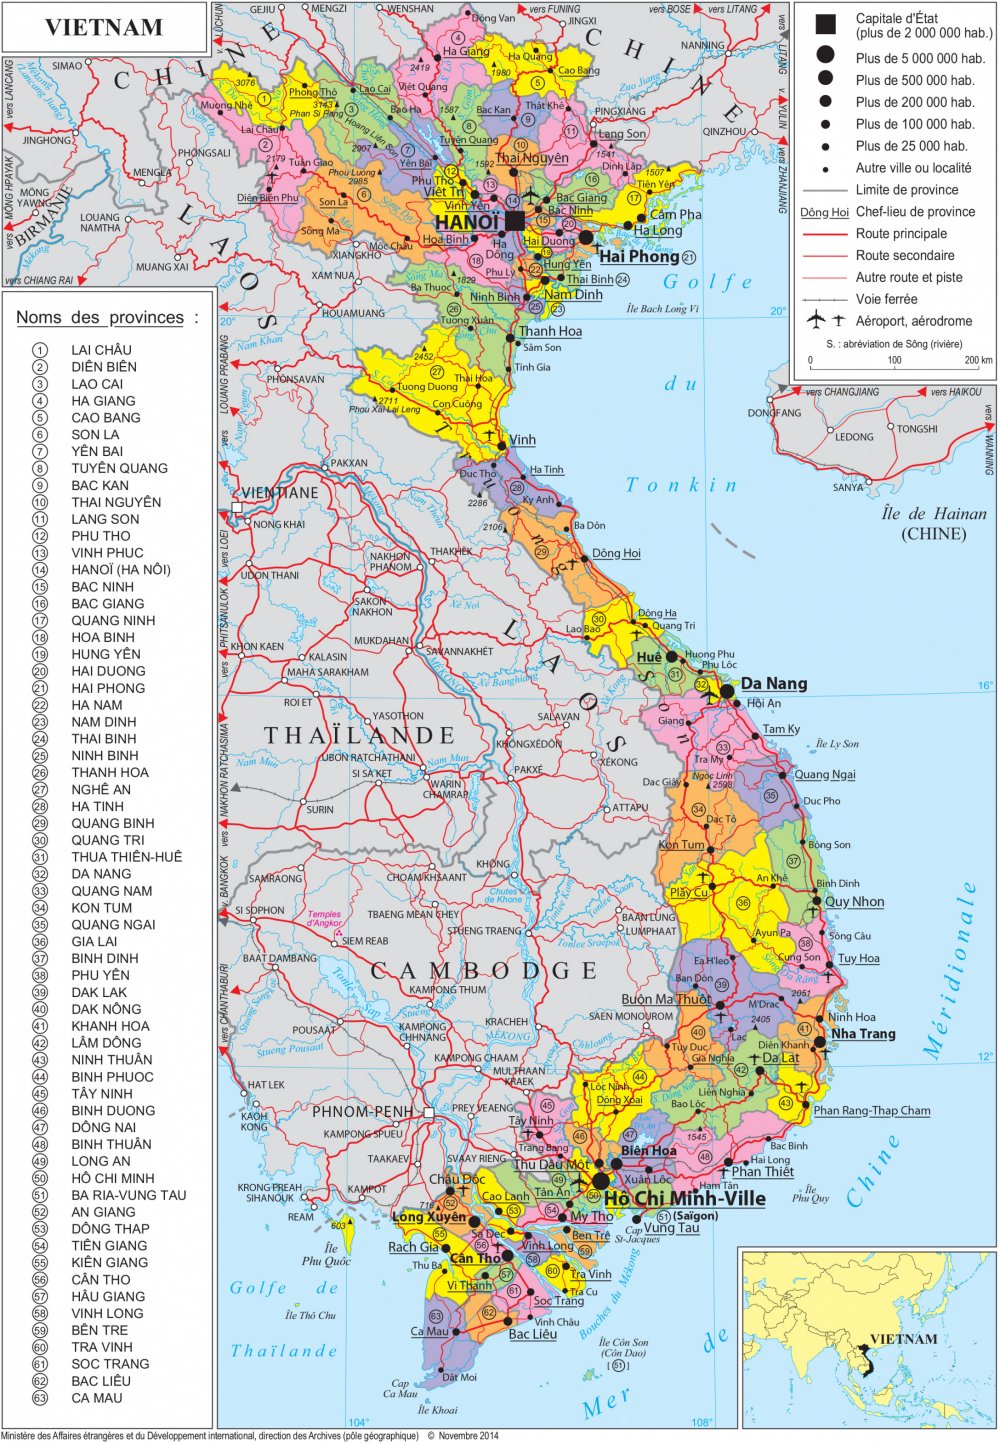 Khám phá bản đồ hành chính các tỉnh Việt Nam để tìm hiểu về văn hóa và địa lý đa dạng của đất nước ta. Hình ảnh sẽ cho bạn cái nhìn toàn diện về quy mô và vị trí các tỉnh thành trên bản đồ.